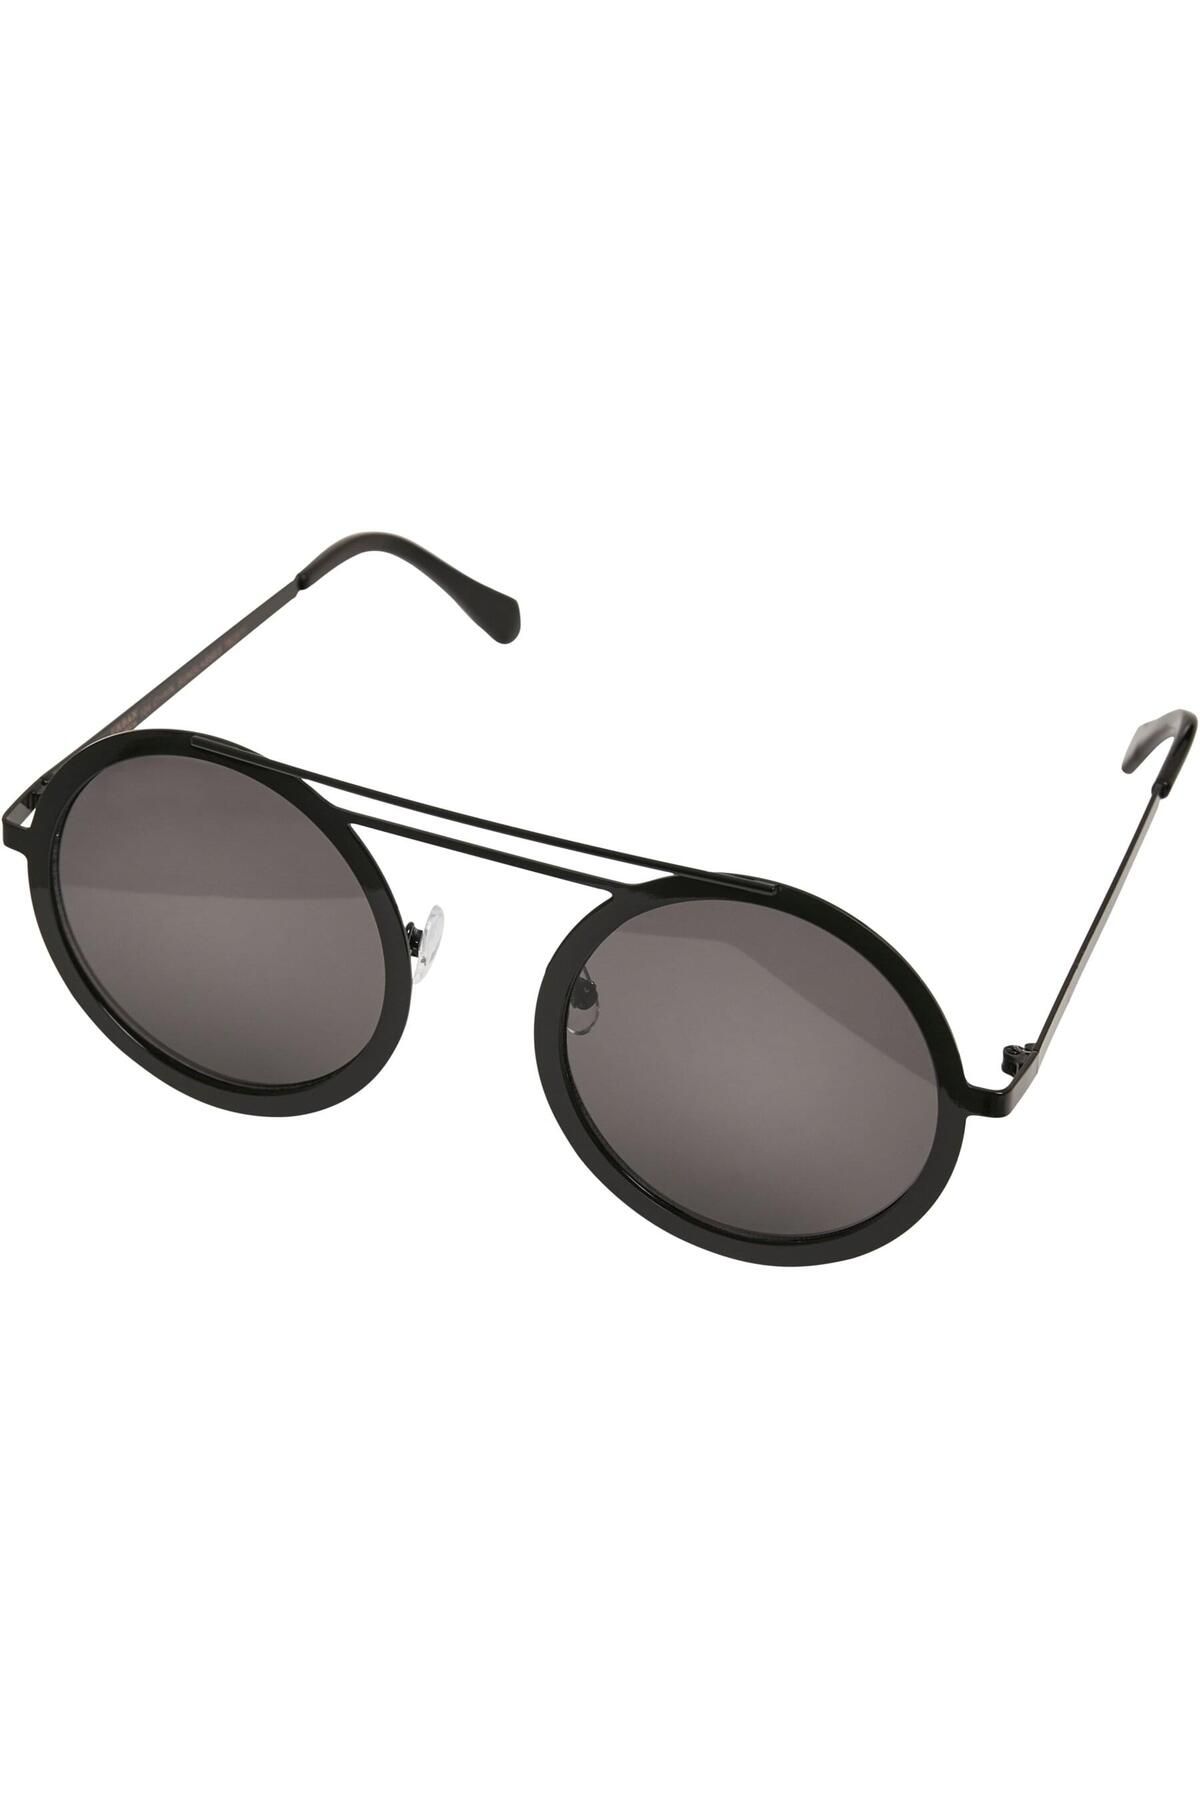 104-Kette mit Unisex-Sonnenbrille Urban Trendyol - Classics